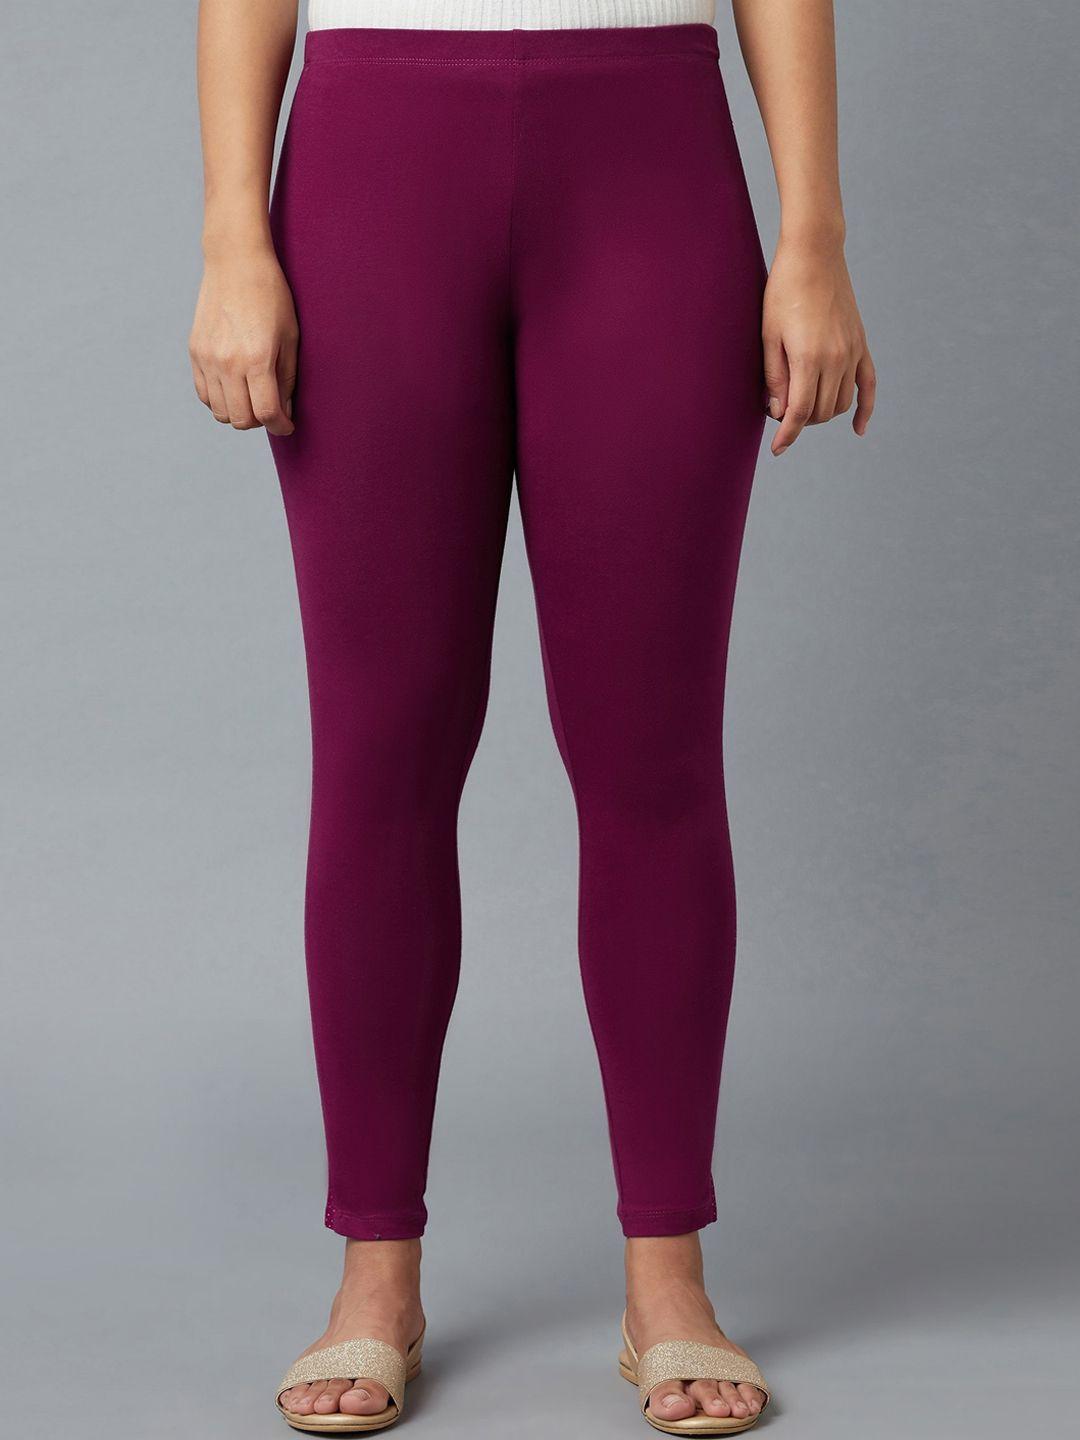 elleven women burgundy solid tights